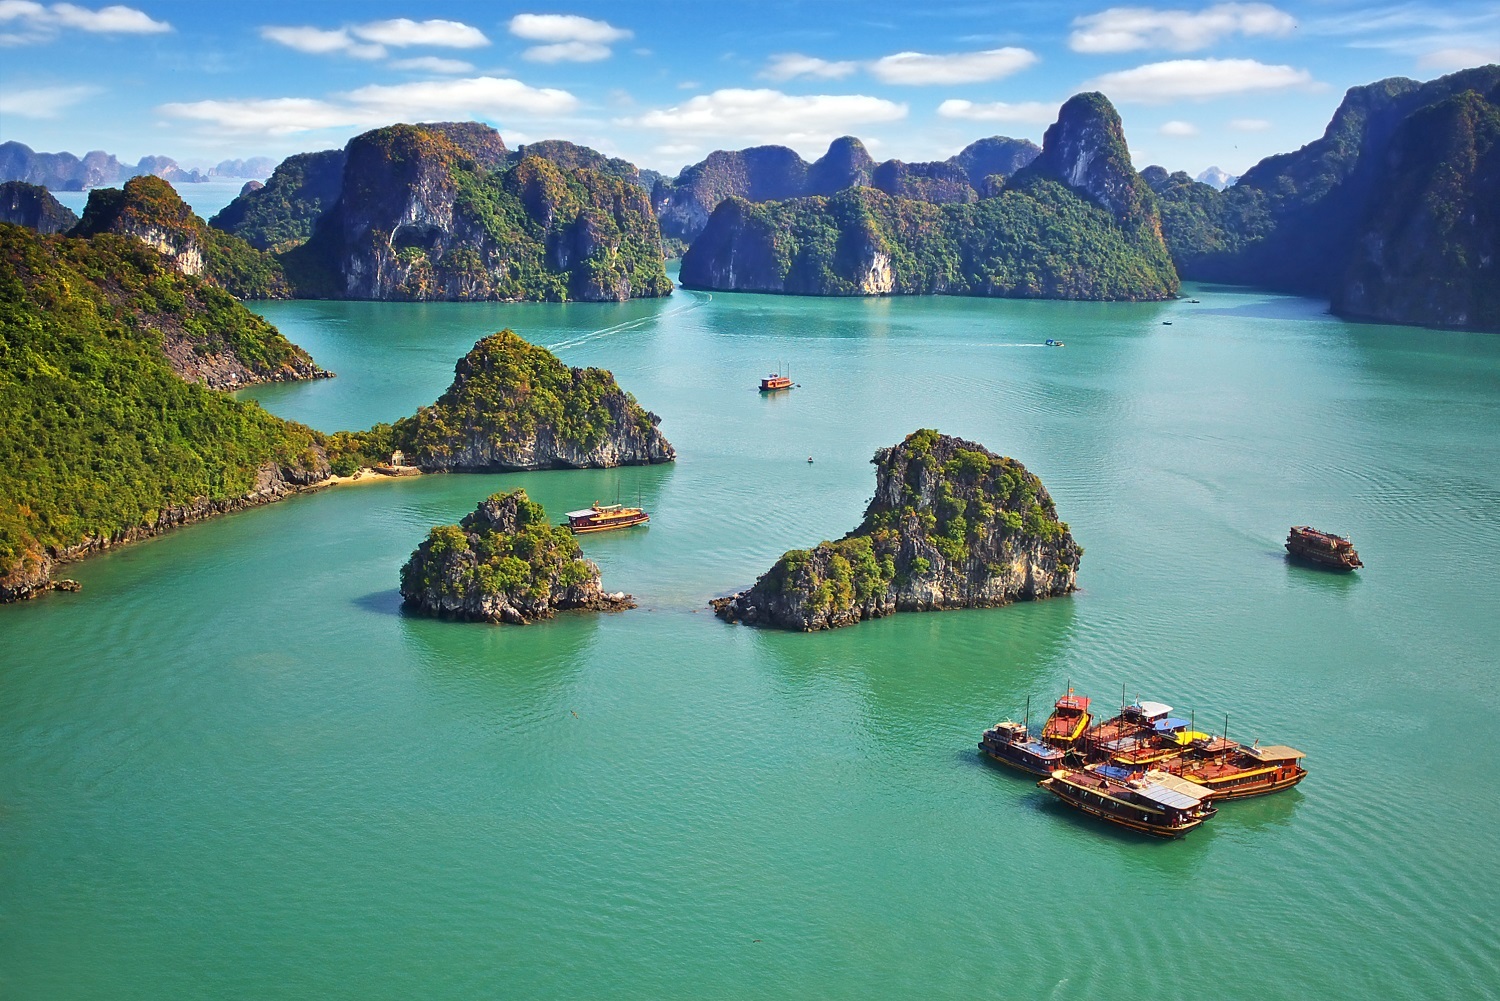 Báo nước ngoài gợi ý 10 lý do để du lịch Việt Nam - Ảnh 3.